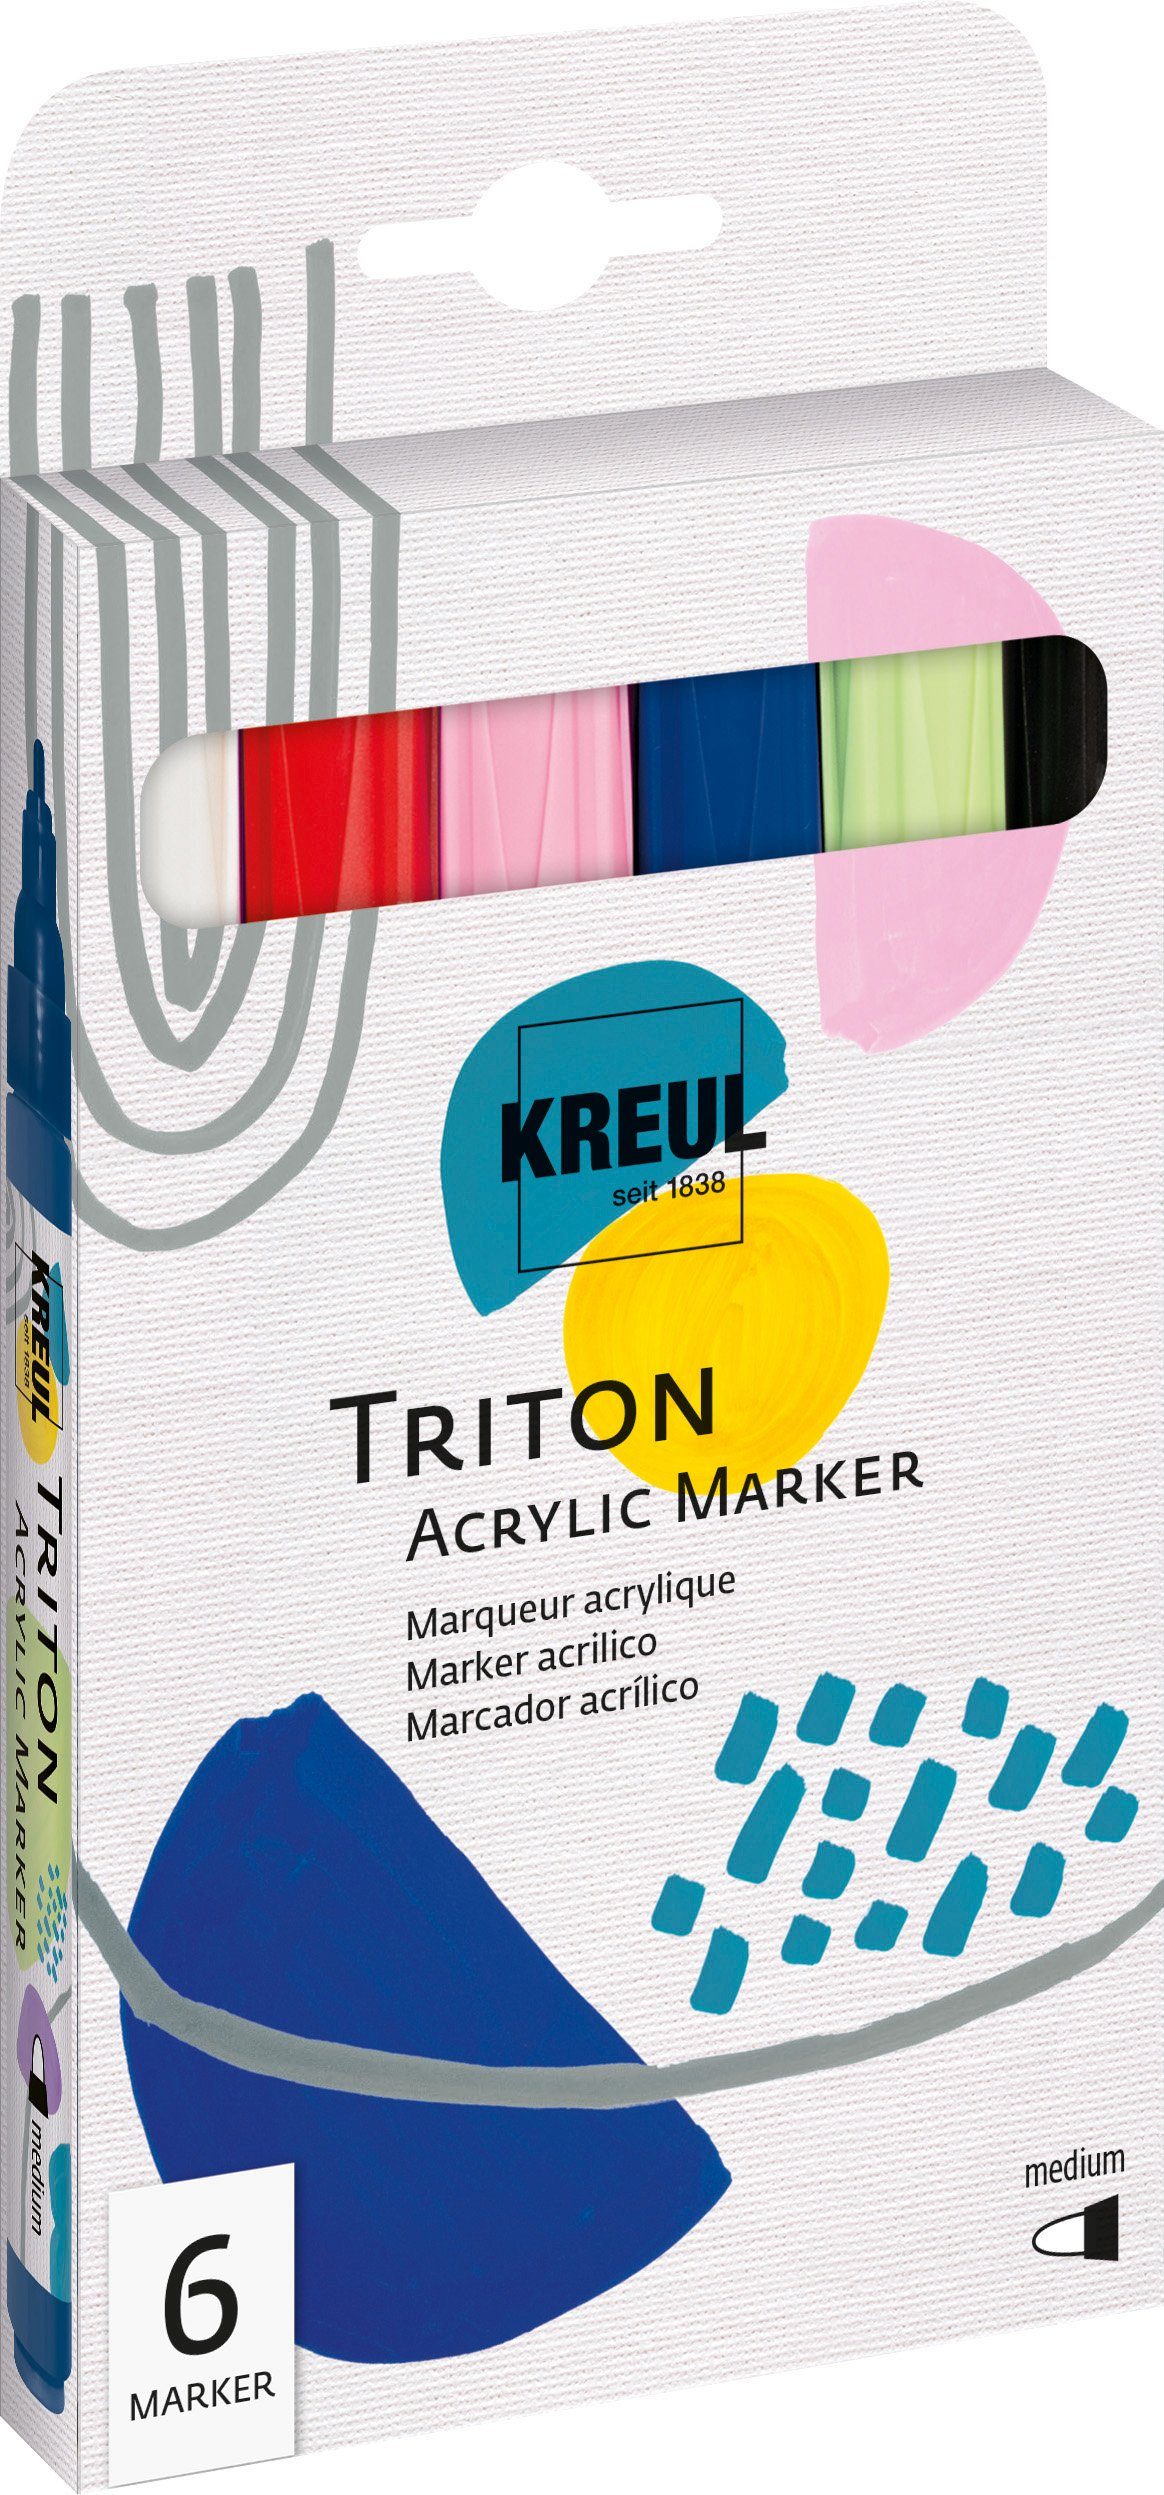 Acrylic Triton Marker Marker Medium Kreul